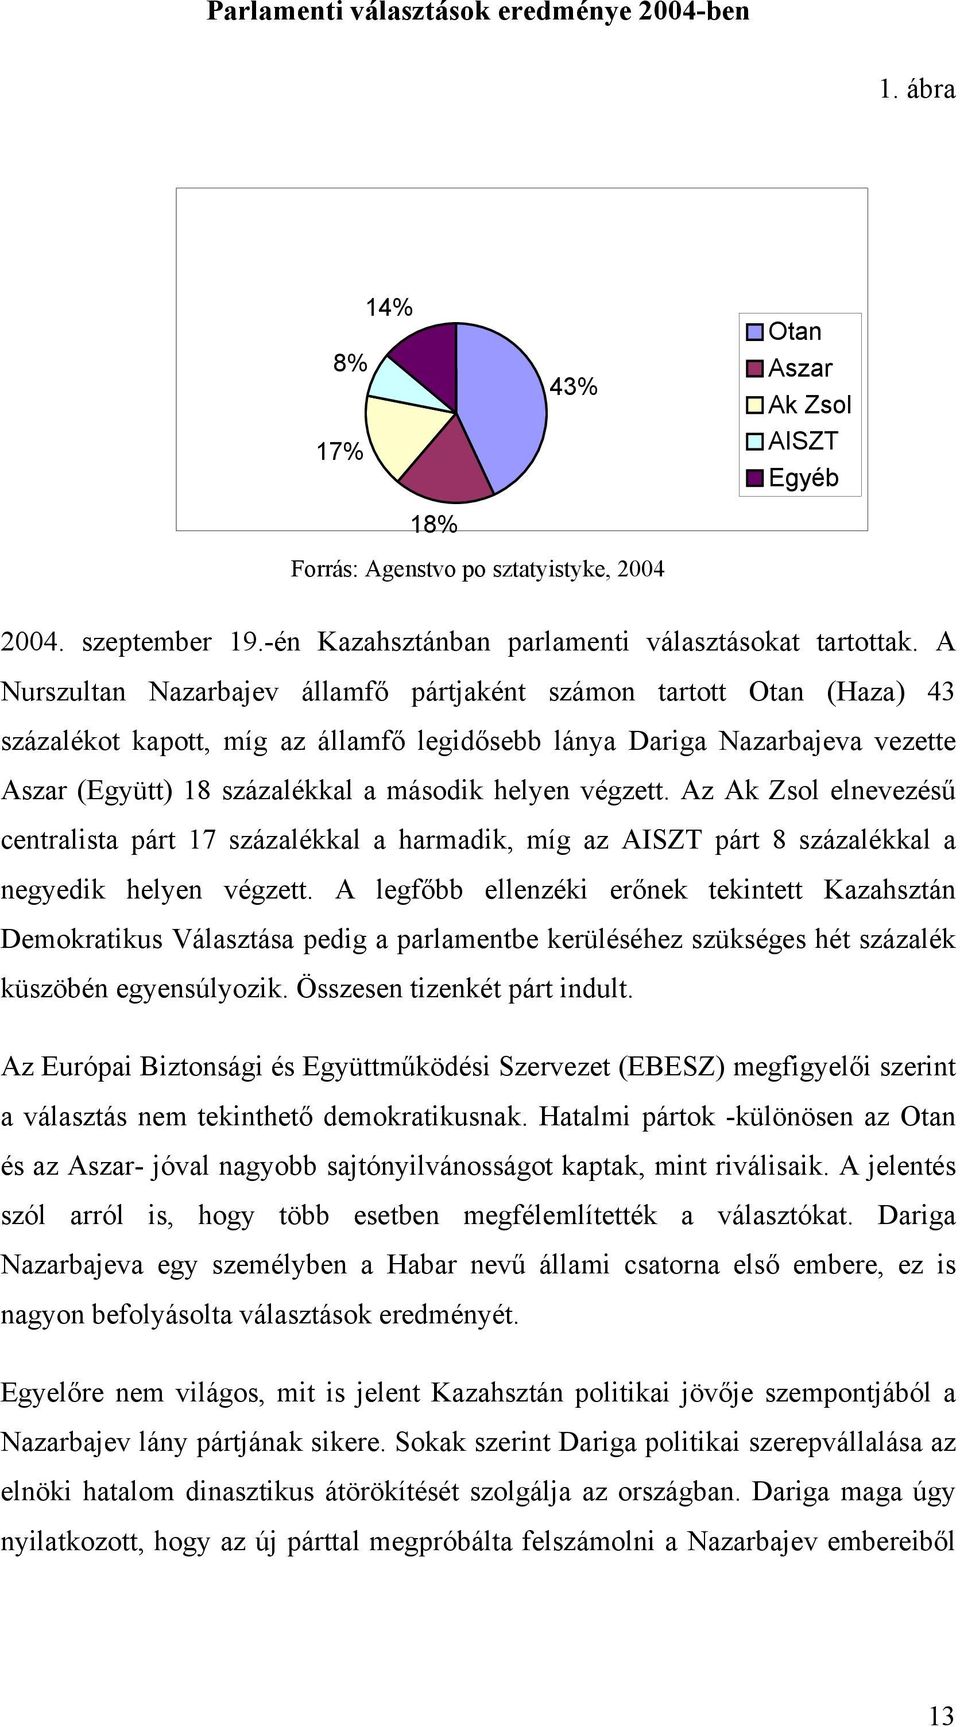 A Nurszultan Nazarbajev államfő pártjaként számon tartott Otan (Haza) 43 százalékot kapott, míg az államfő legidősebb lánya Dariga Nazarbajeva vezette Aszar (Együtt) 18 százalékkal a második helyen